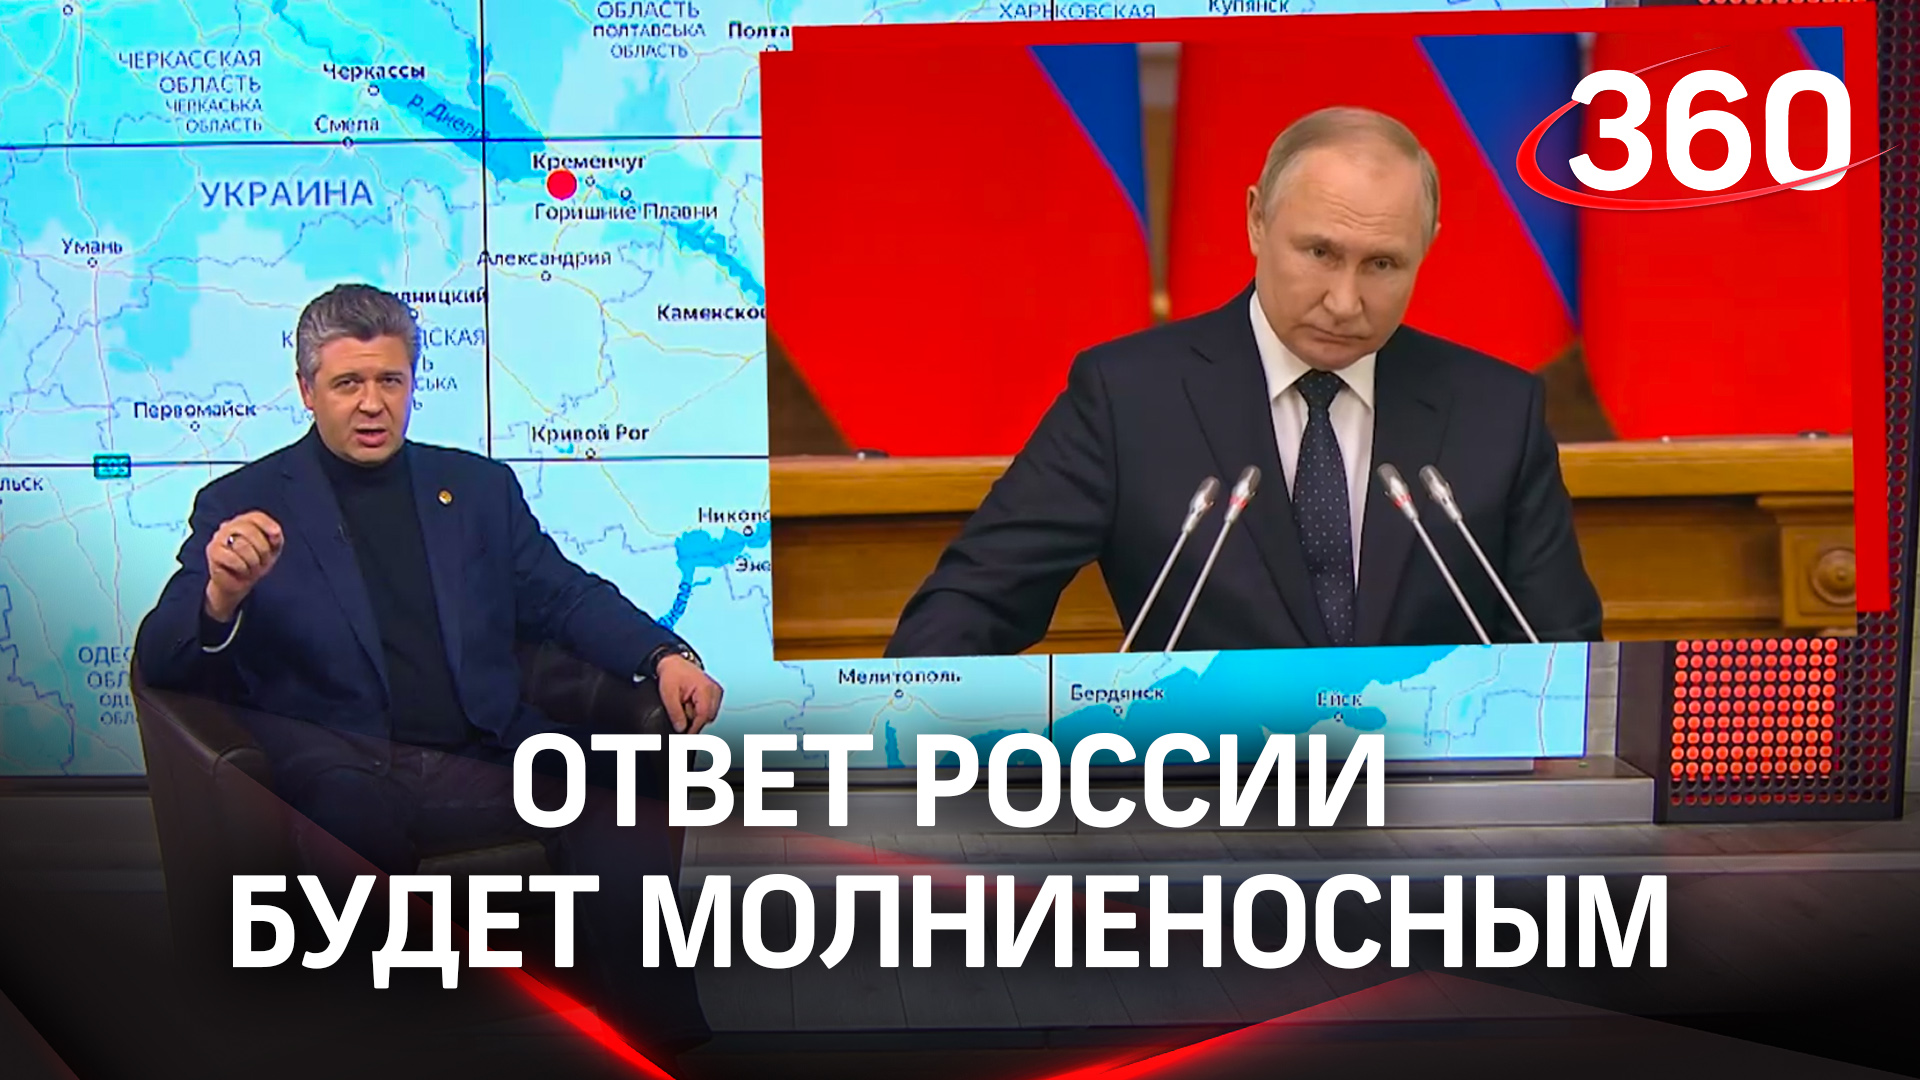 Молниеносный ответ. Российские политики выступающие на телевидении фото.